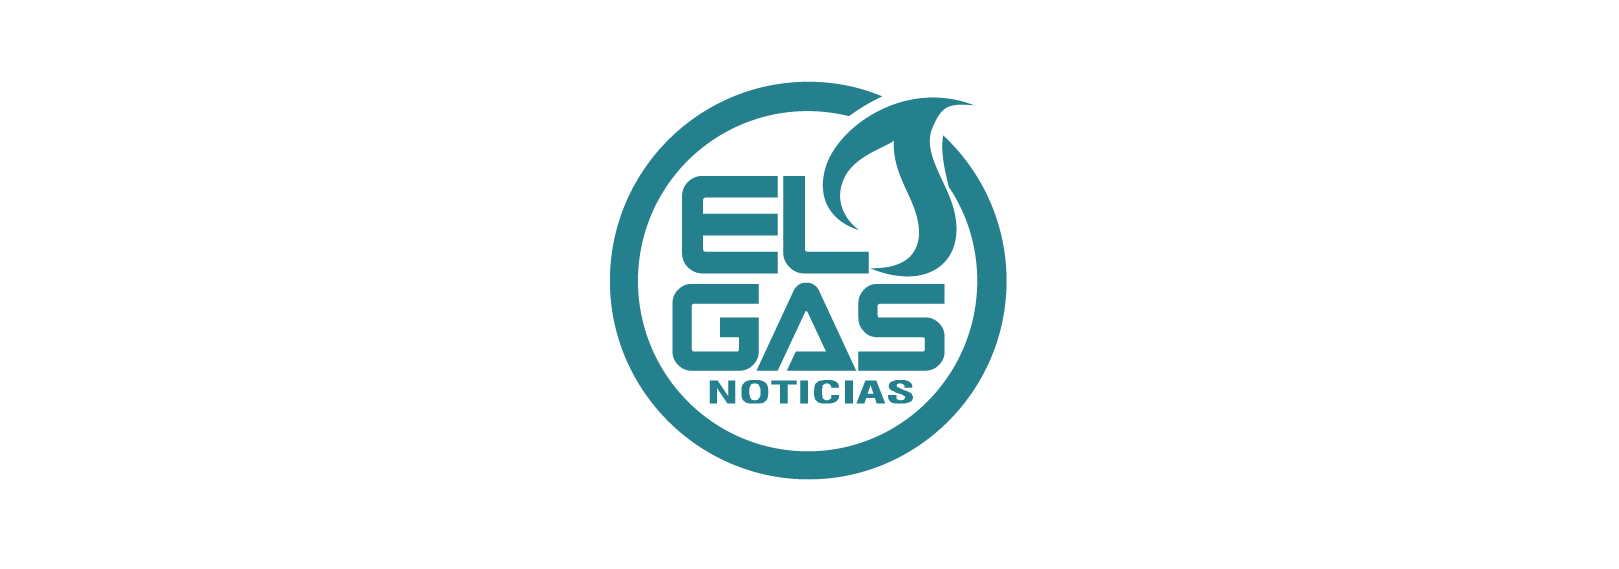 EL GAS NOTICIAS